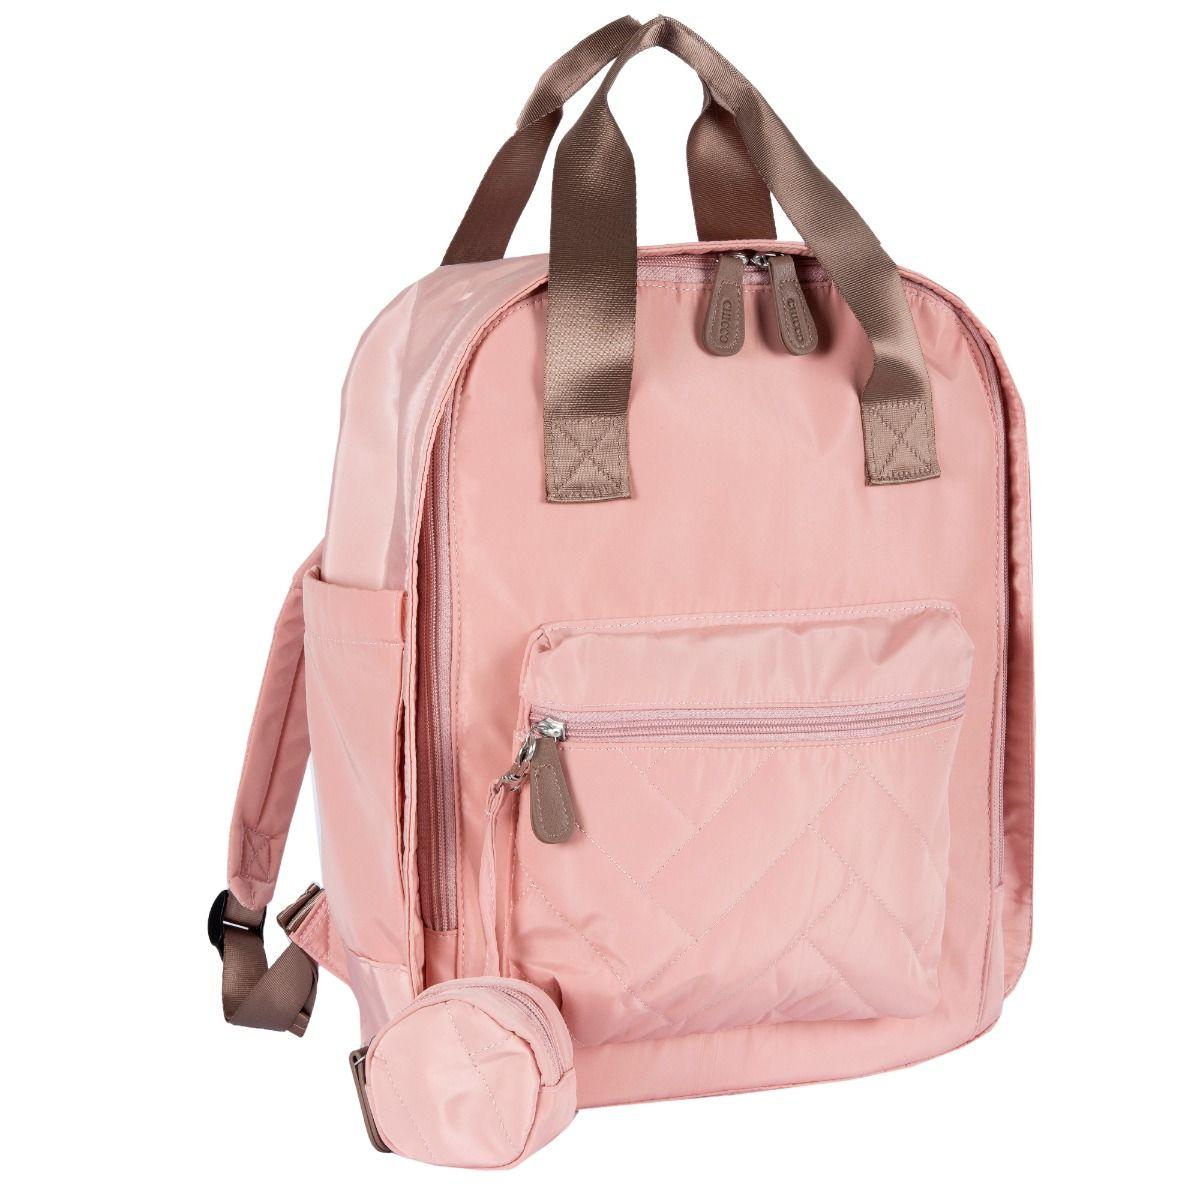 Сумка-рюкзак для мамы Chicco розовая 2020 Осень-Зима